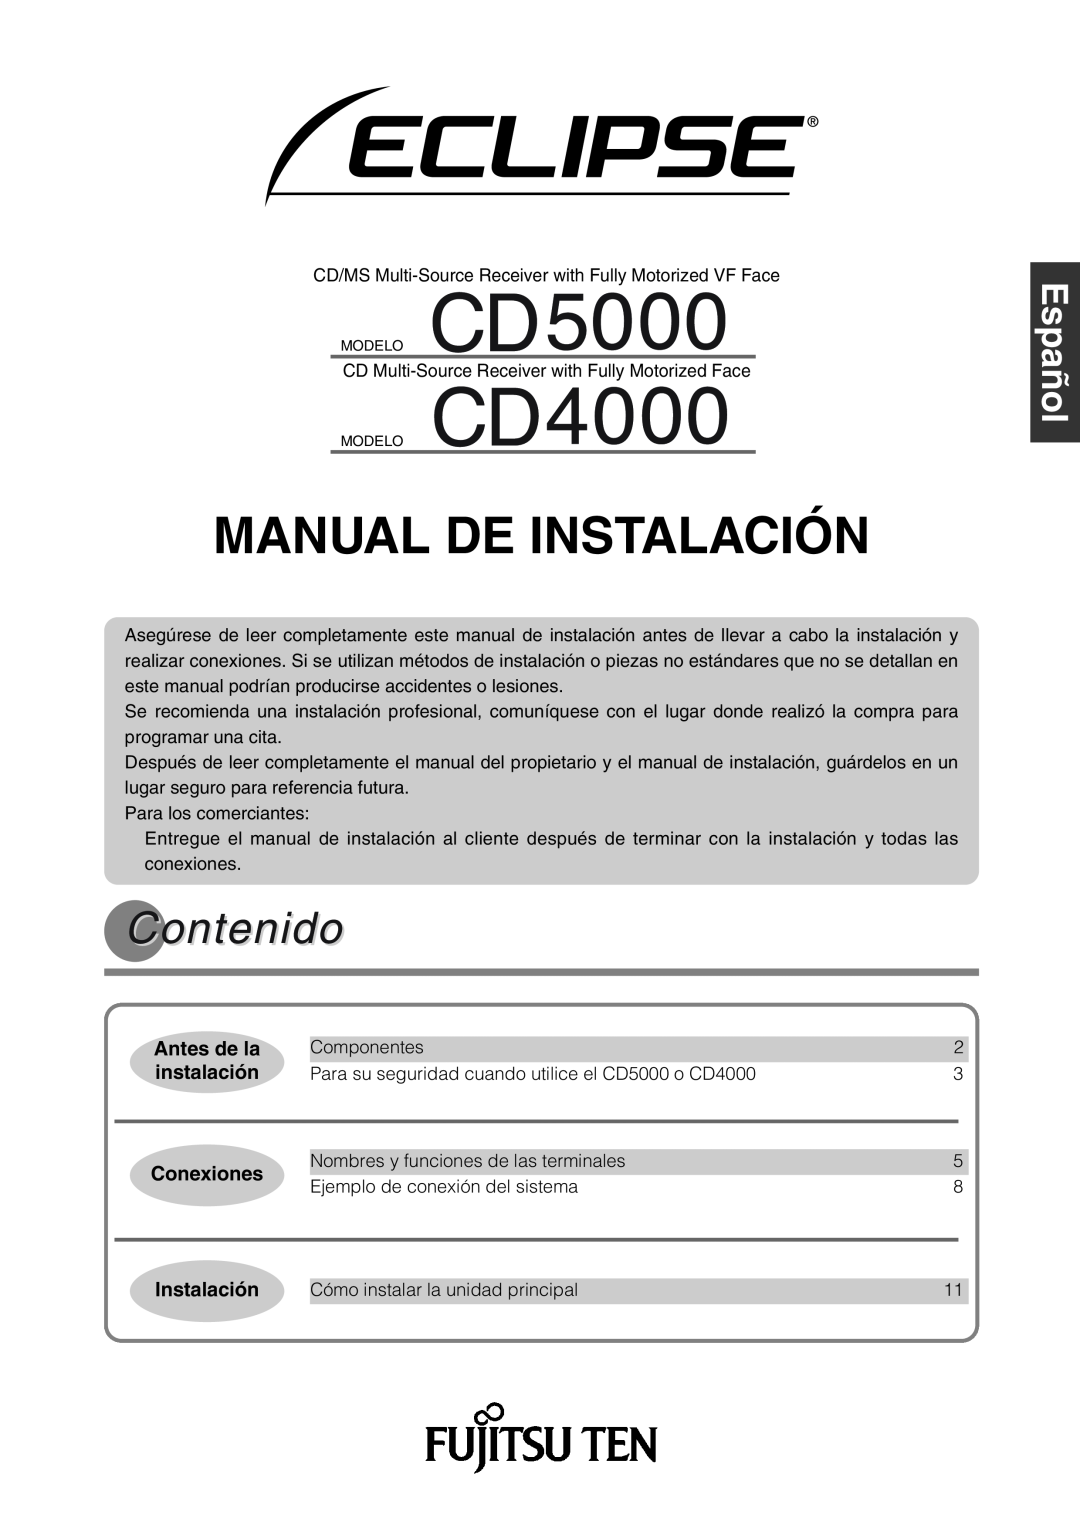 Eclipse - Fujitsu Ten CD4000, CD5000 Manual De Instalación, Contenido, Antes de la, instalación, Conexiones, Svenska 